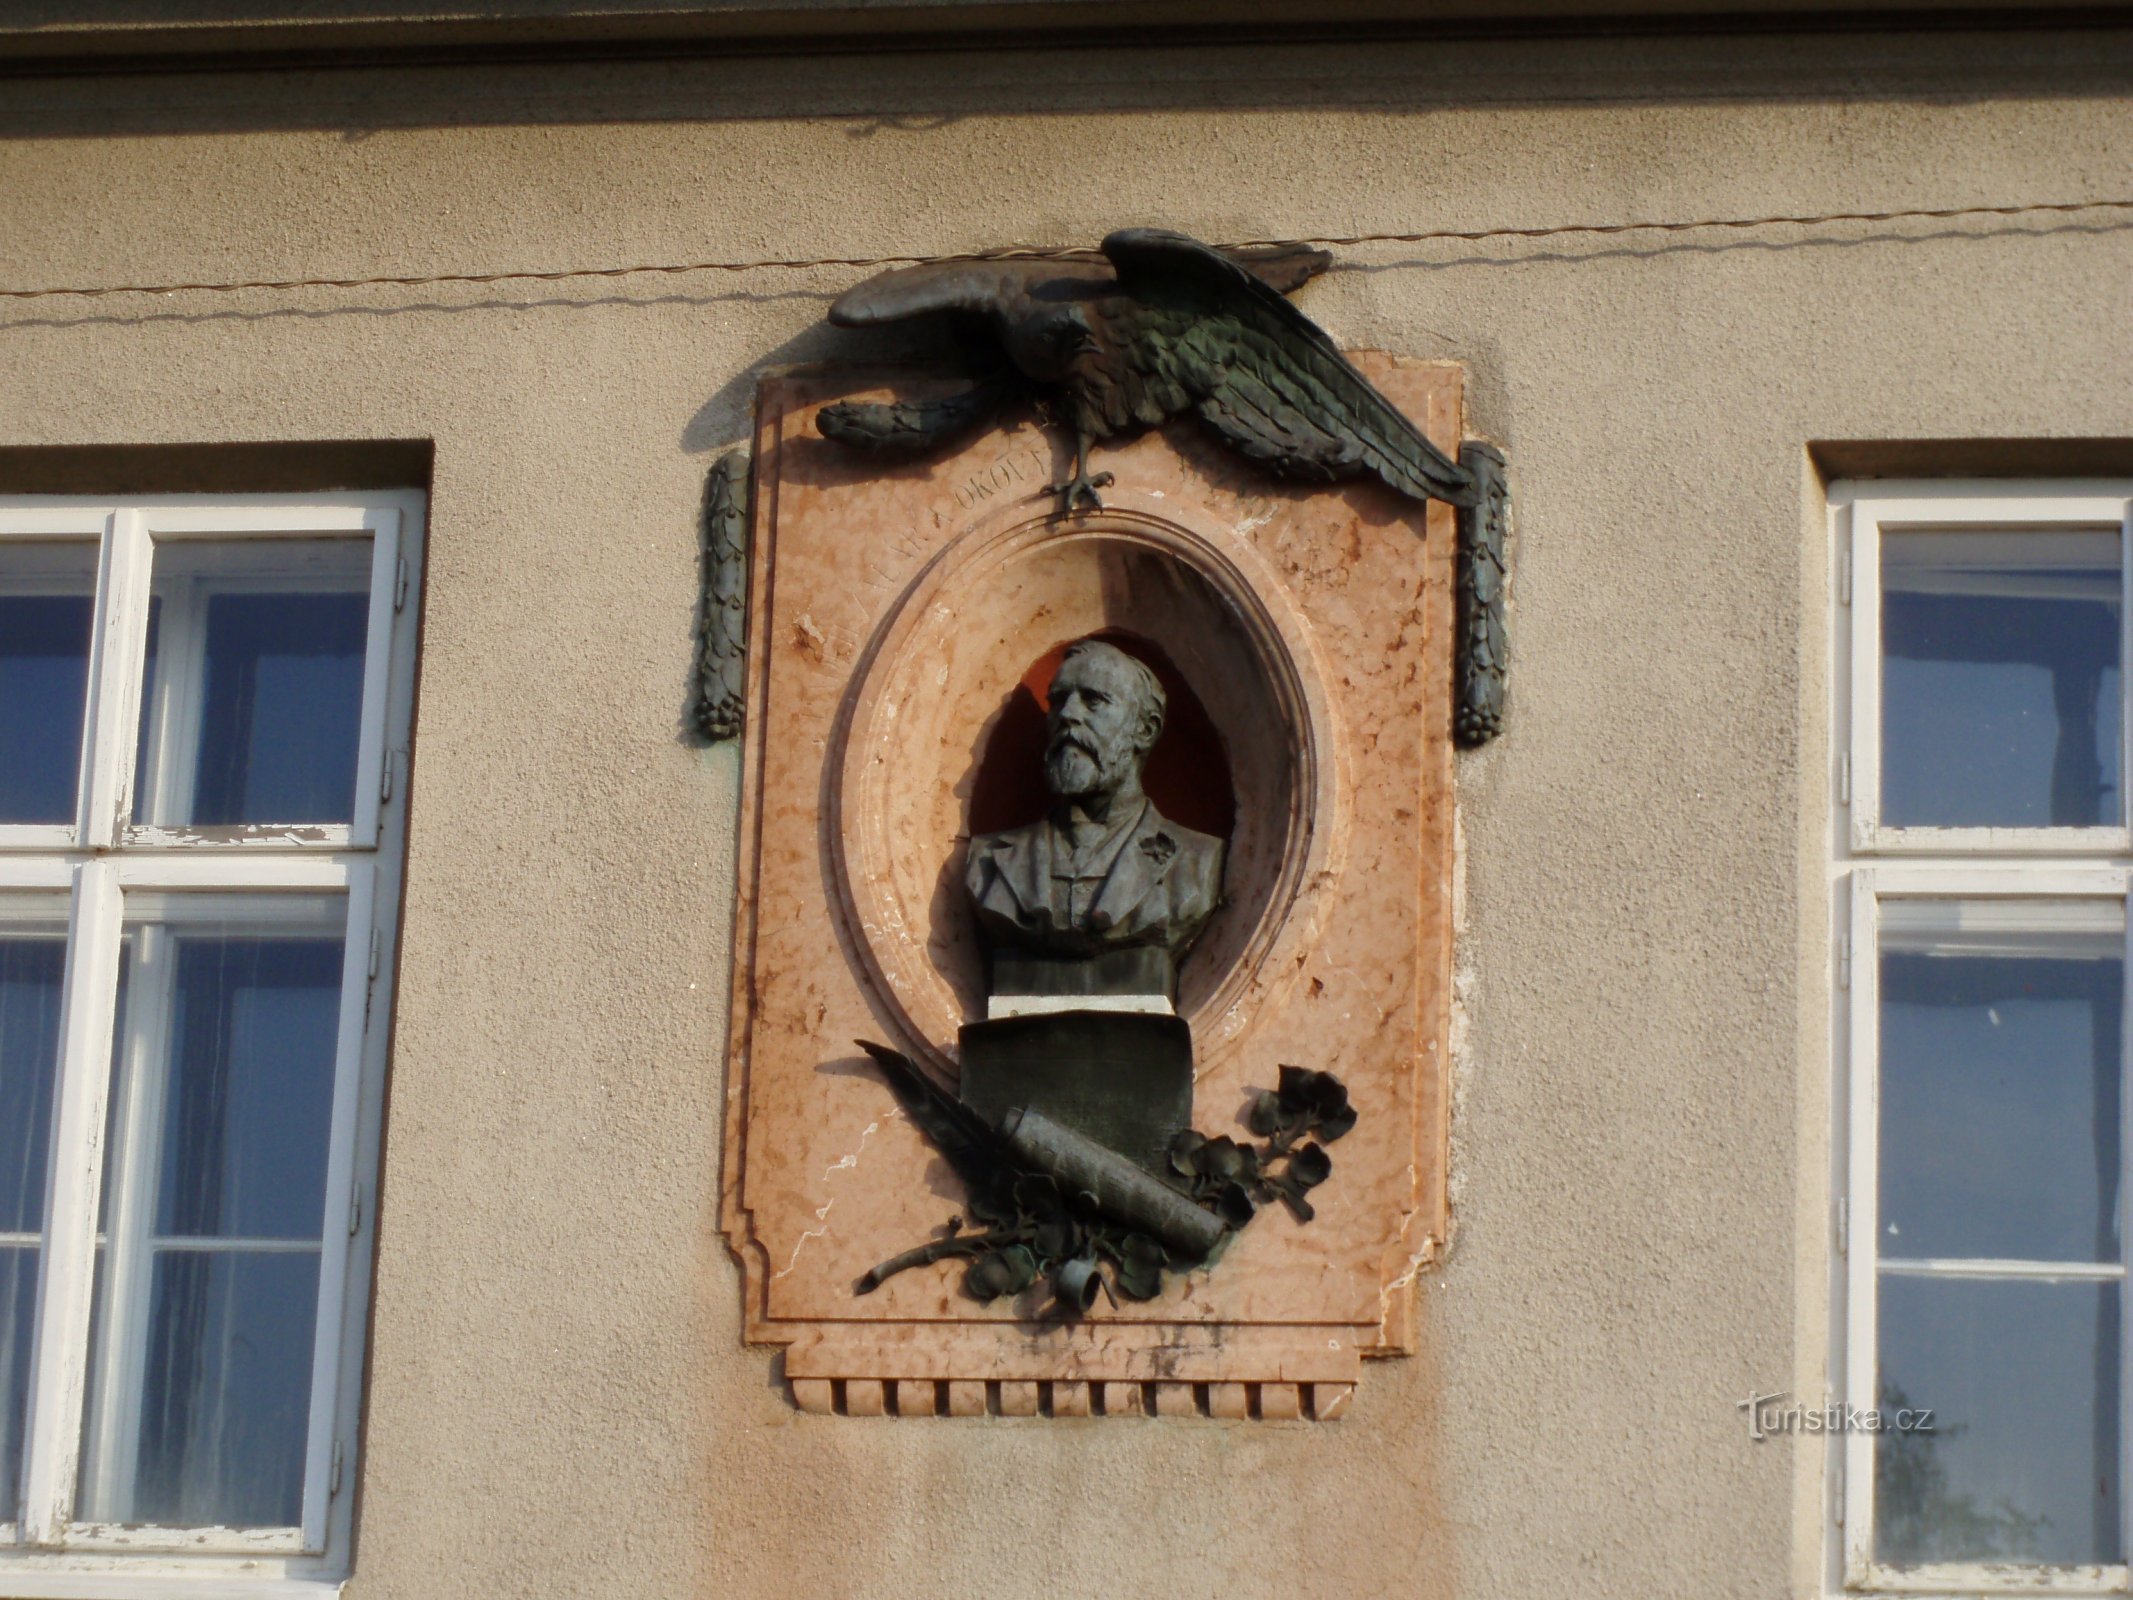 Меморіальна дошка з бюстом Ю.Д. Юлія Грегра перед зникненням бюсту (Градец Кралове)